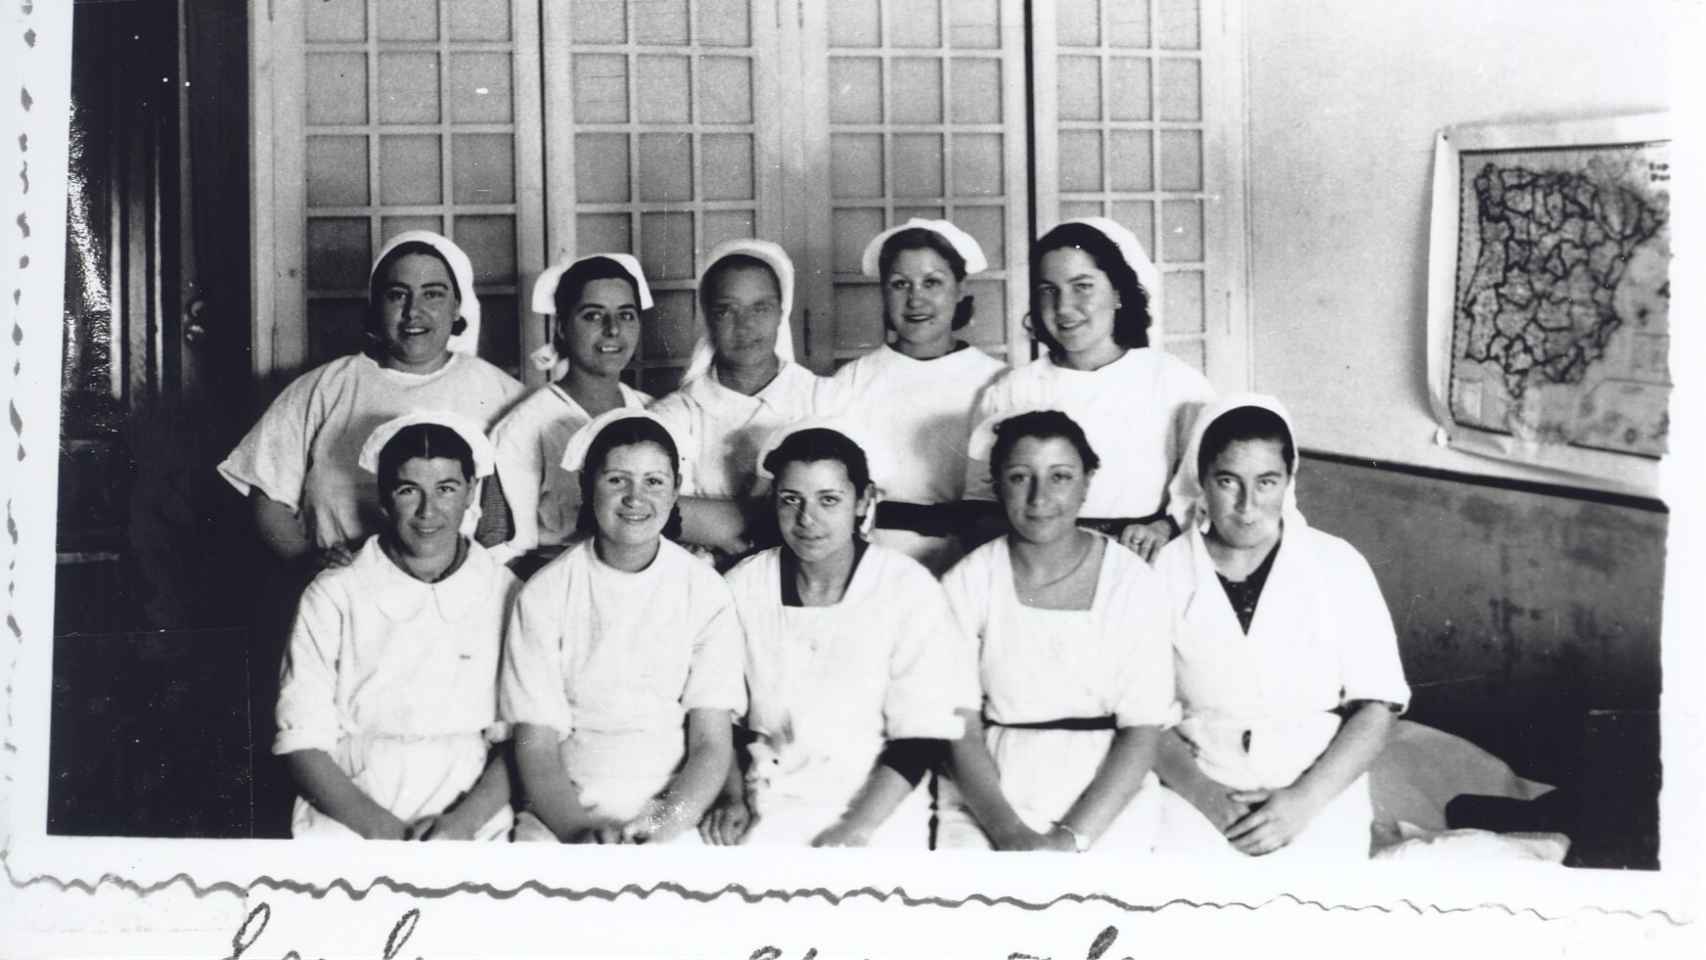 Enfermeras españolas en un hospital durante la Guerra Civil. 1936-1939. Fondo Brigadas Internacionales. AHP Albacete.